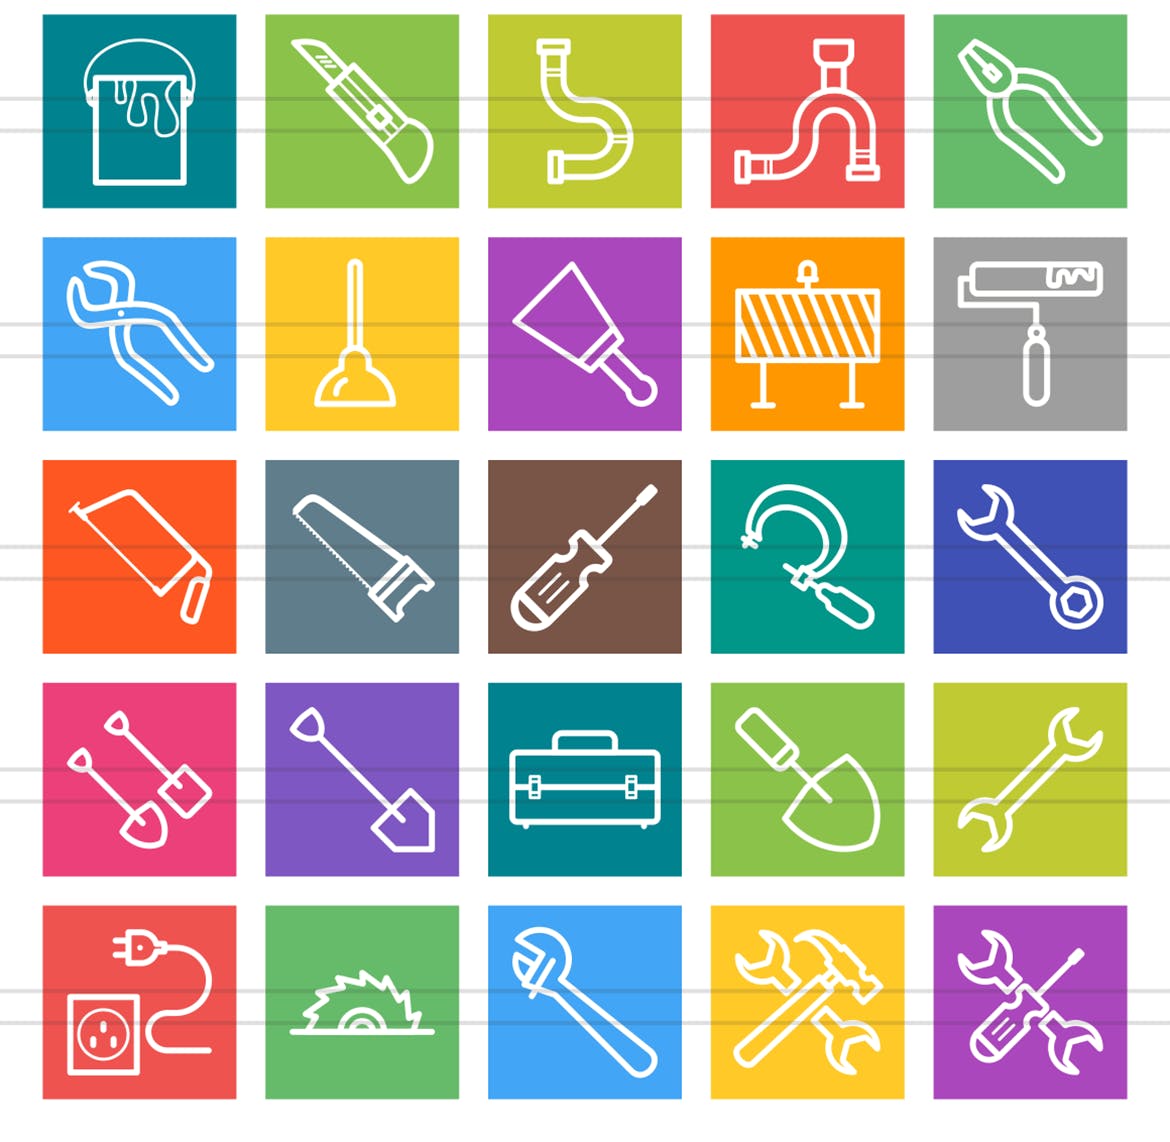 50枚工具多彩线条图标素材 50 Tools Line Multicolor Icons插图(2)